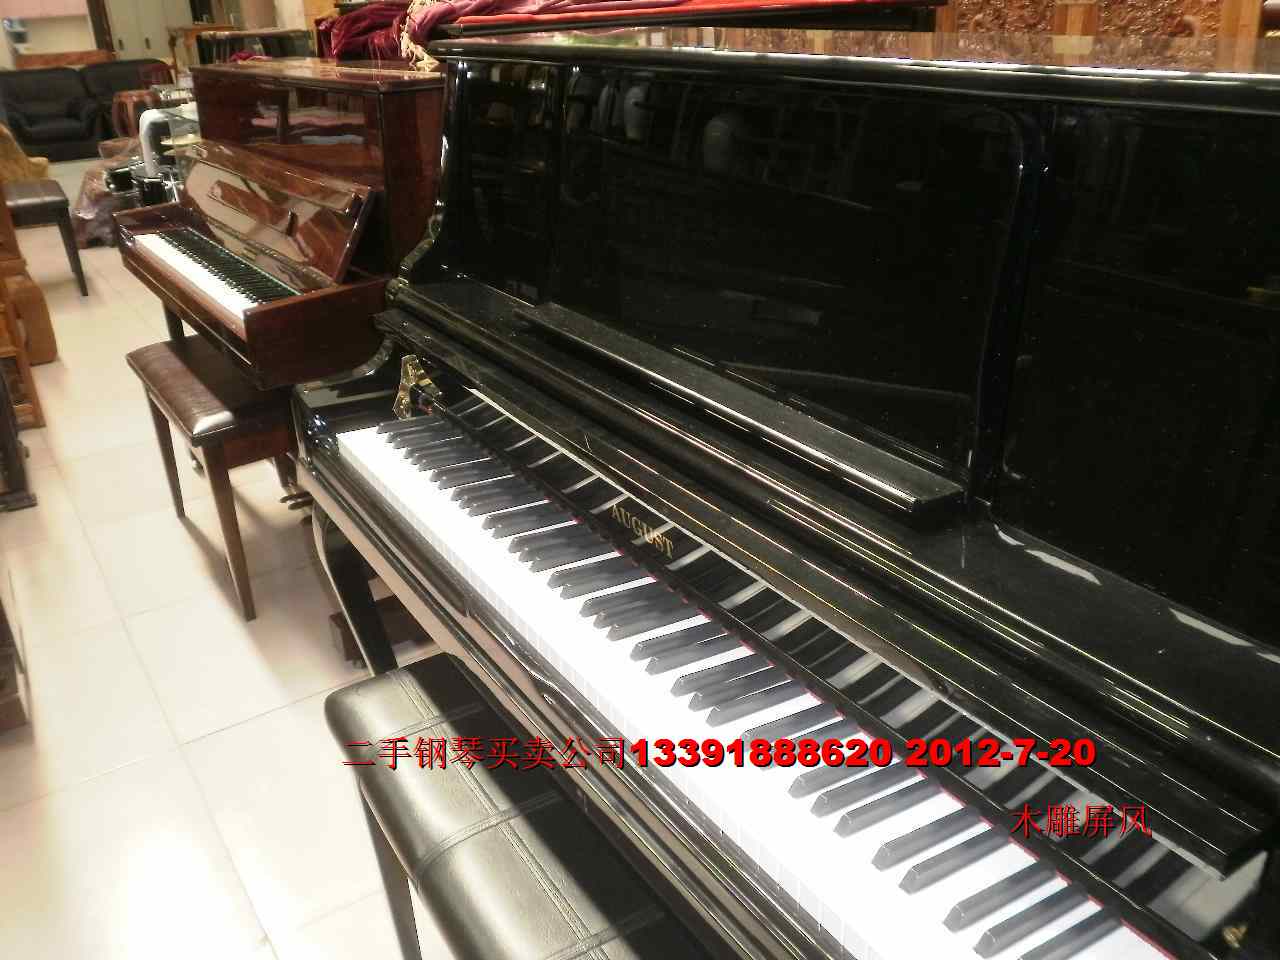 亚运村钢琴回收 二手钢琴回收乐器图片